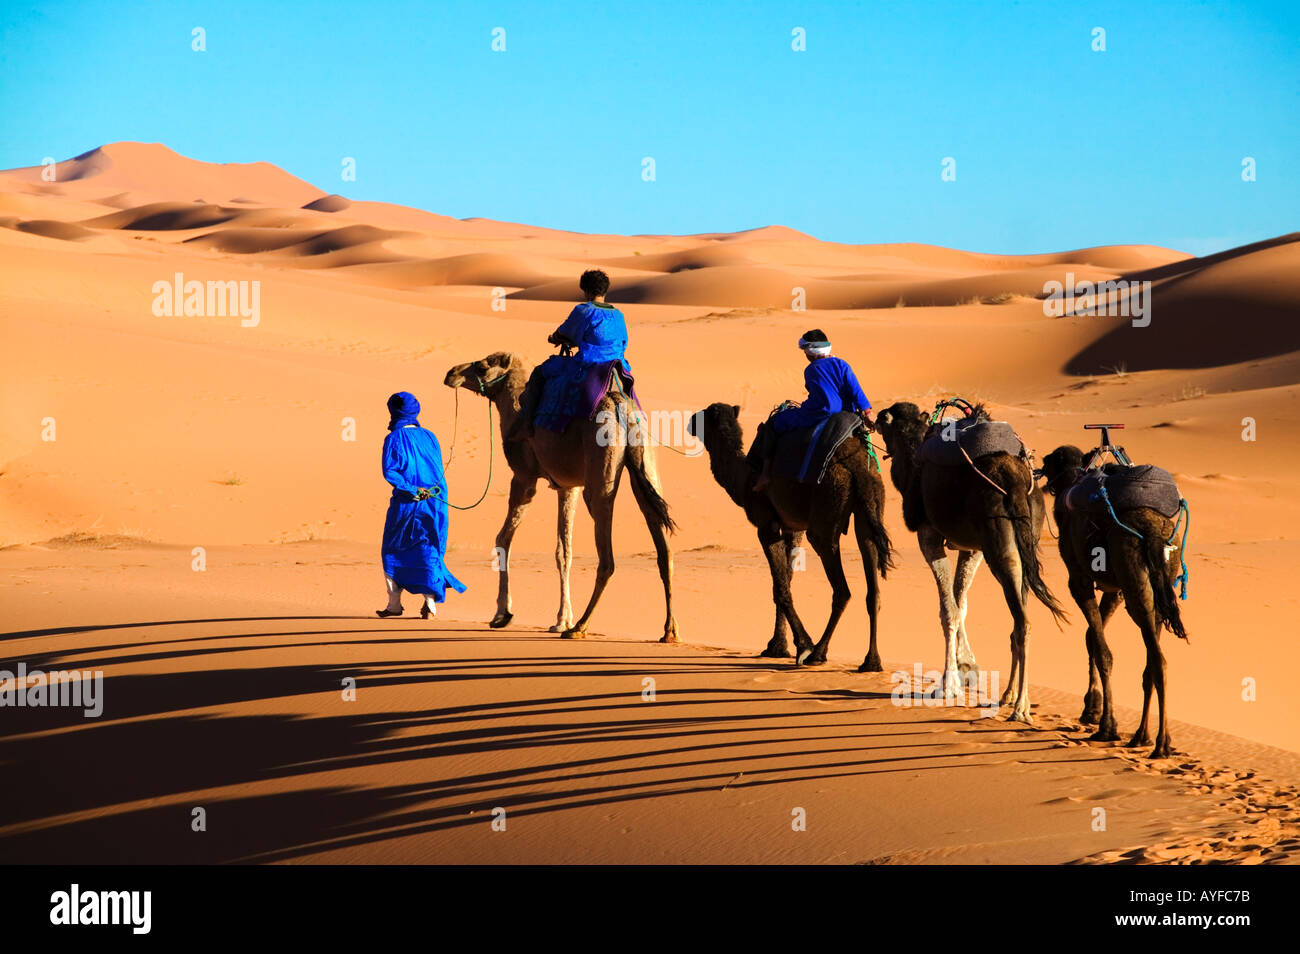 Homme Touareg et ses enfants habillés en robe bleu traditionnel avec des chameaux dans le désert du Sahara, l'Erg Chebbi Maroc Banque D'Images